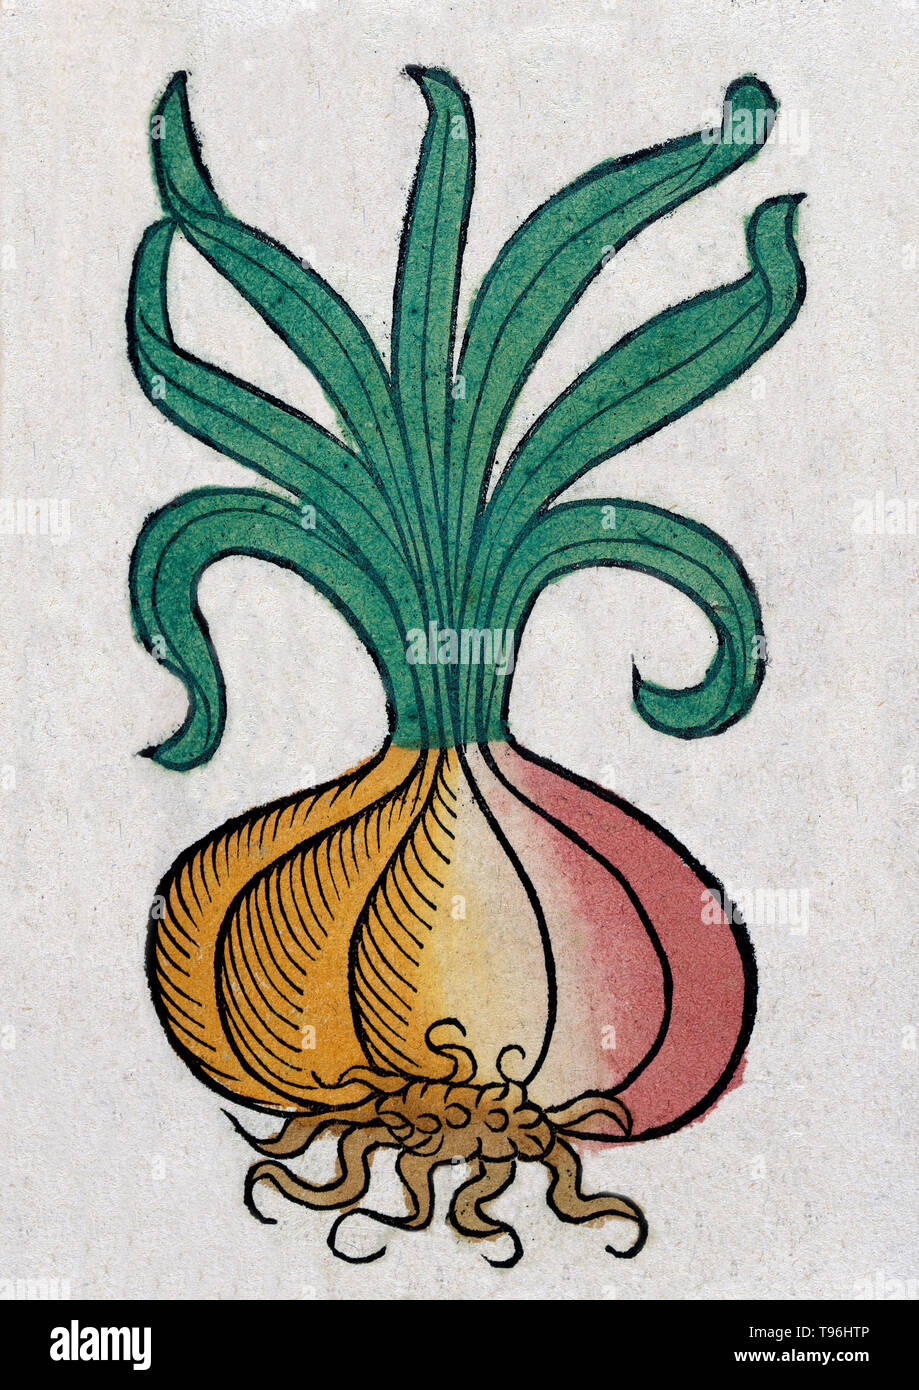 Die Zwiebel ist ein Gemüse, das ist die am häufigsten kultivierten Arten der Gattung Allium. Der ältere Plinius dokumentierten Römischen Glauben über die Fähigkeit der Zwiebel okuläre Erkrankungen, Hilfe im Schlaf zu verbessern und heilen alles von mündlichen Wunden und Zahnschmerzen zu Hund beißt, Hexenschuss, und sogar der Dysenterie. Der Hortus Sanitatis (Garten der Gesundheit), der erste natürliche Geschichte Enzyklopädie, wurde von Jakob Meydenbach in Deutschland 1491 veröffentlicht. Stockfoto